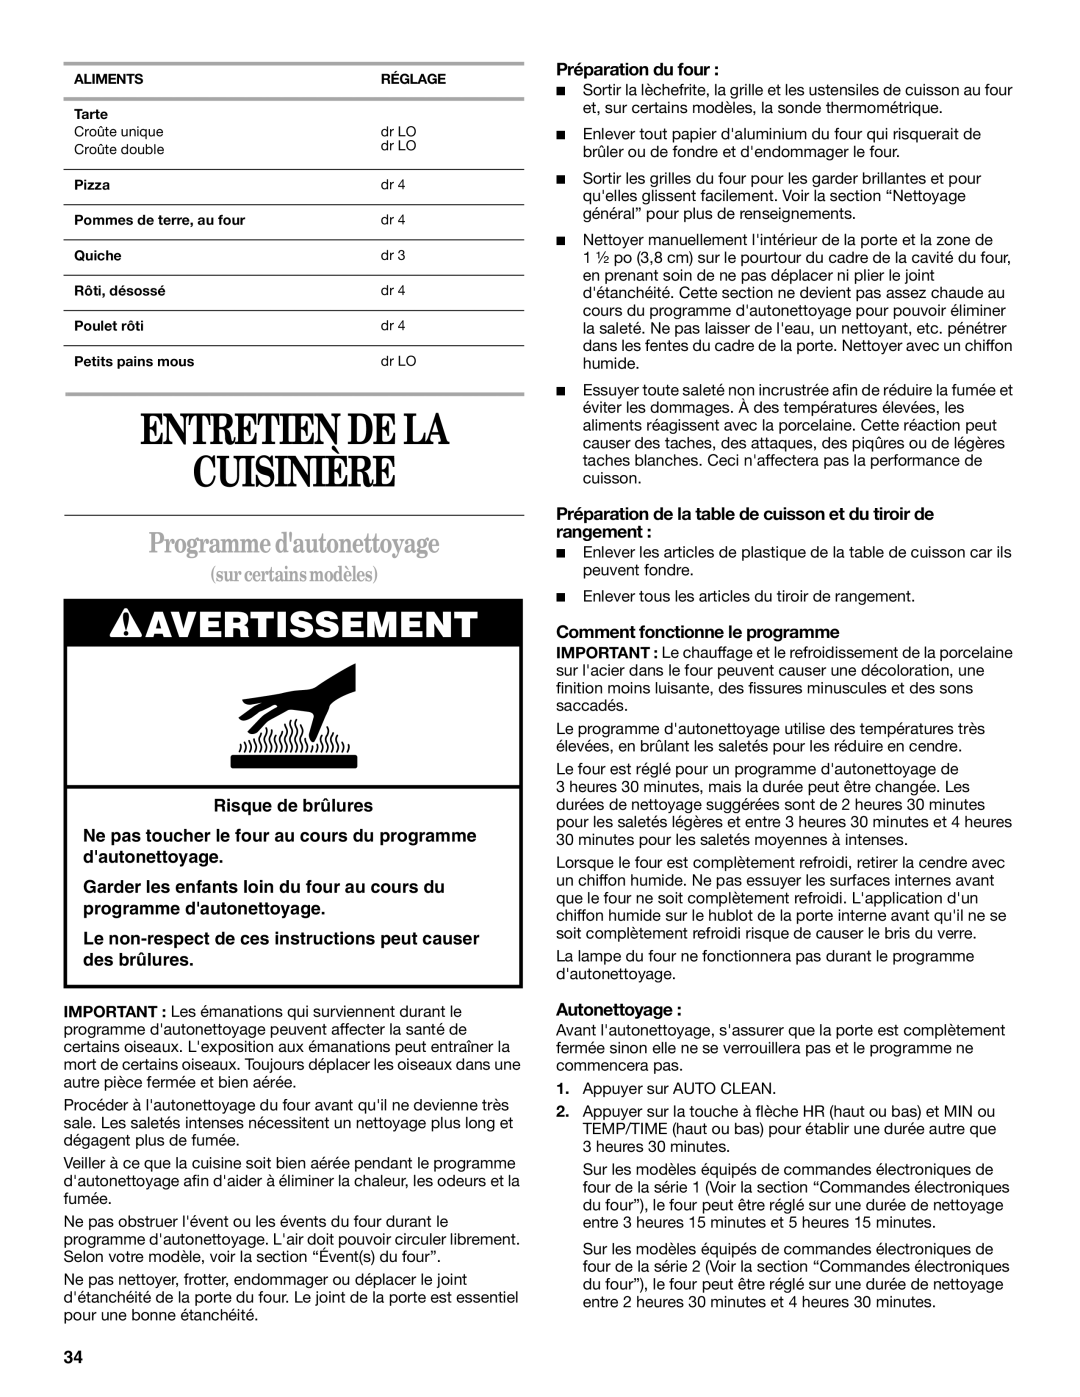 Whirlpool SF378LEPB1 manual Entretien De La Cuisinière, Programme dautonettoyage, Avertissement, sur certains modèles 